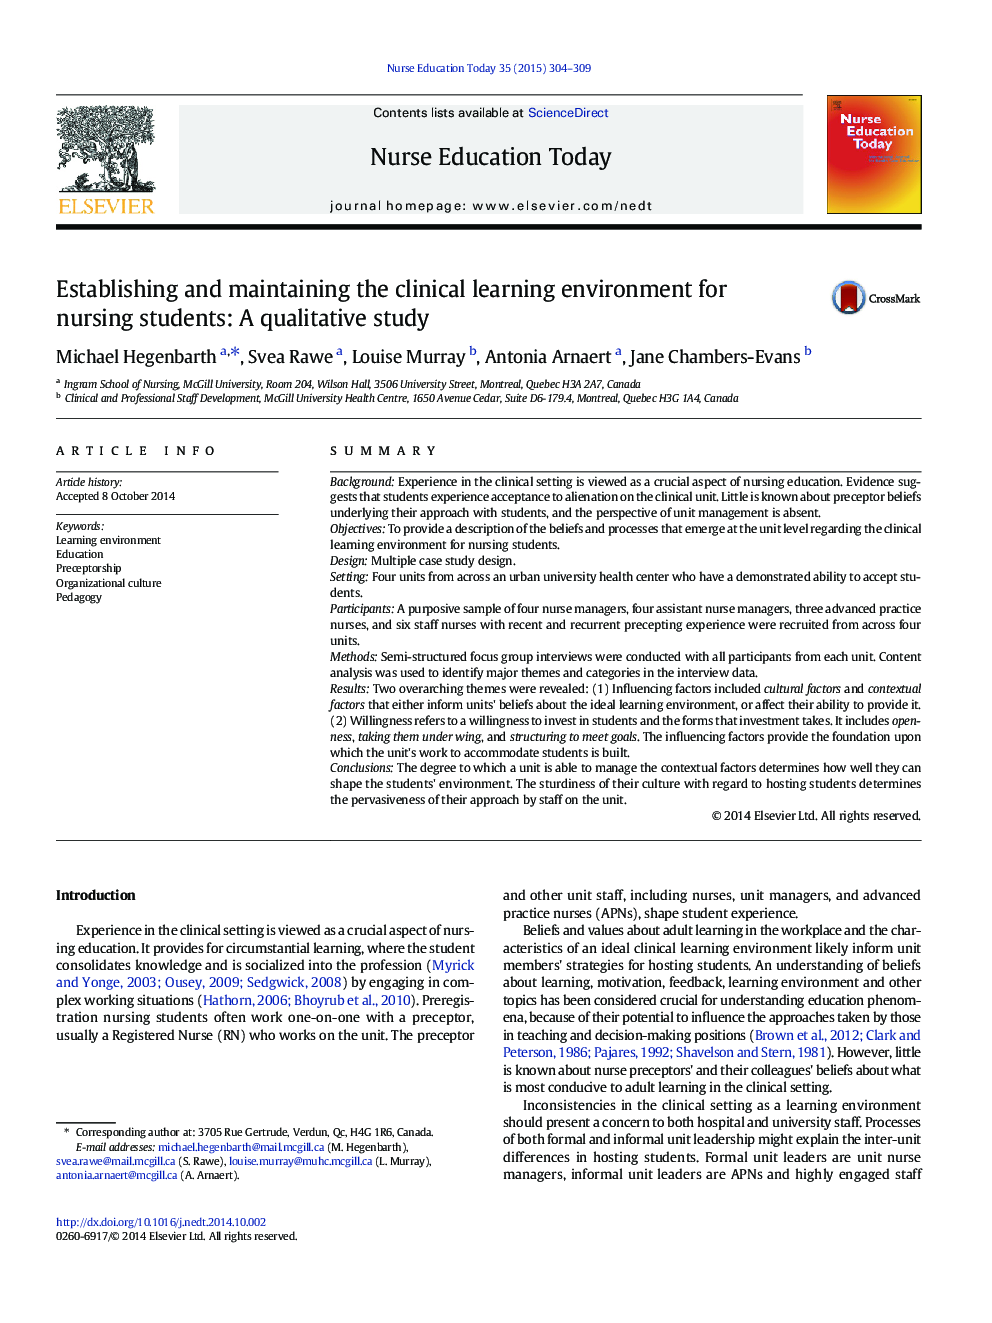 ایجاد و نگهداری محیط یادگیری بالینی برای دانشجویان پرستاری: یک مطالعه کیفی 